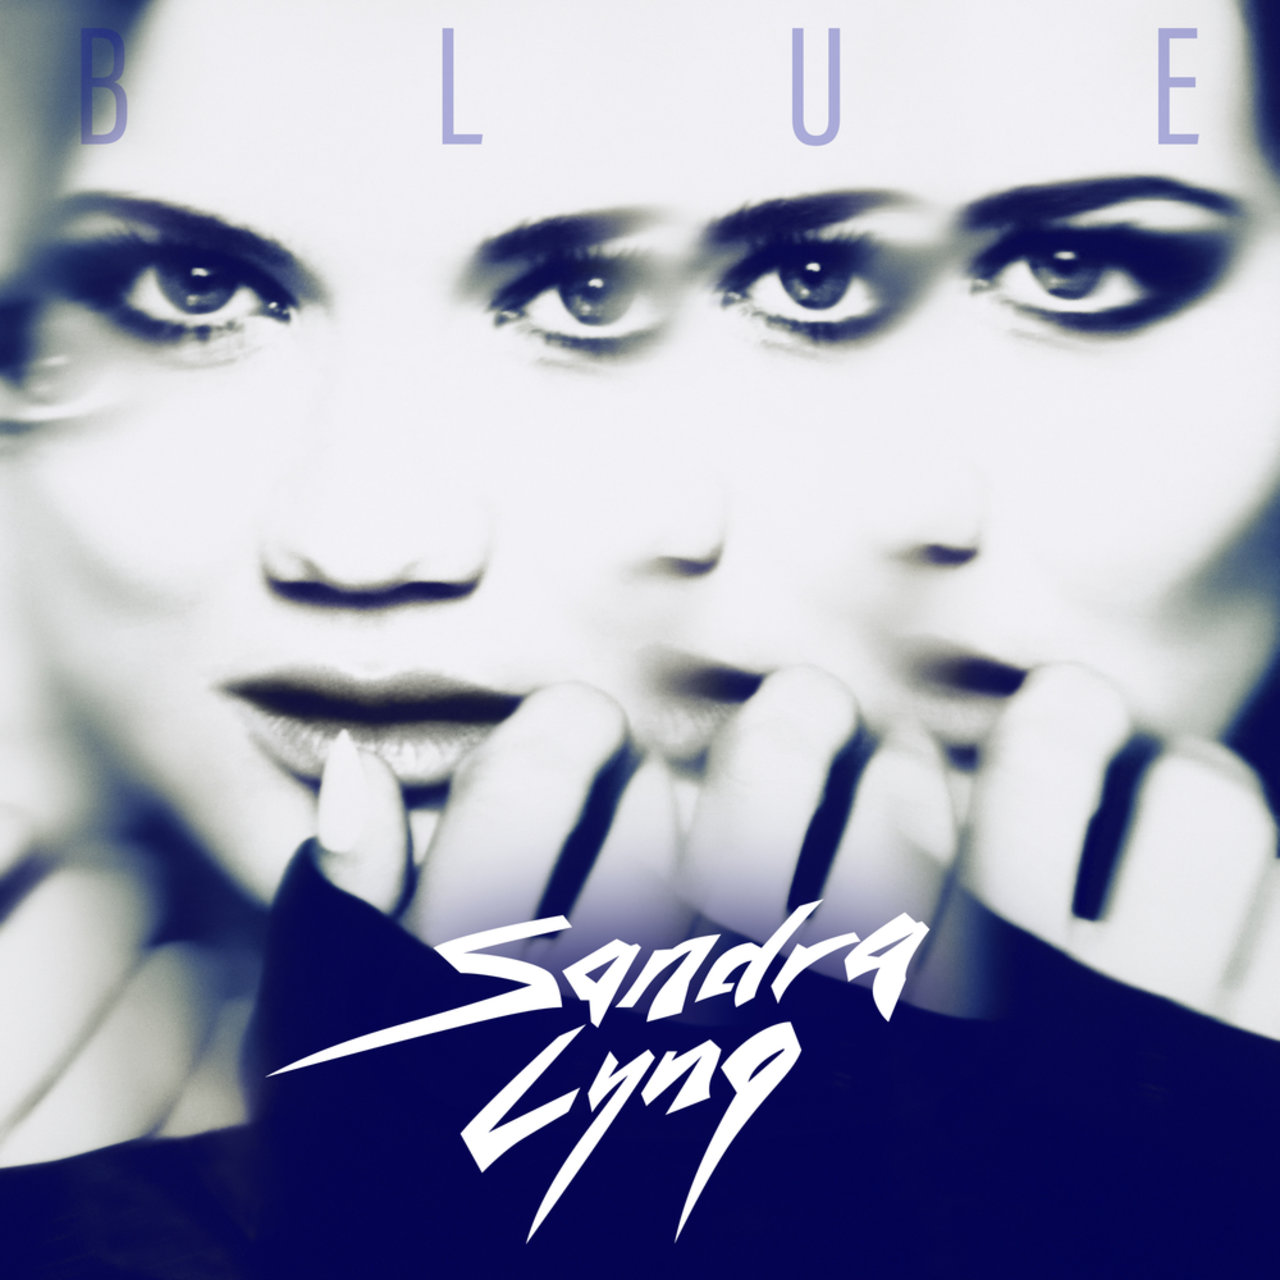 Sandra Lyng — Blue cover artwork